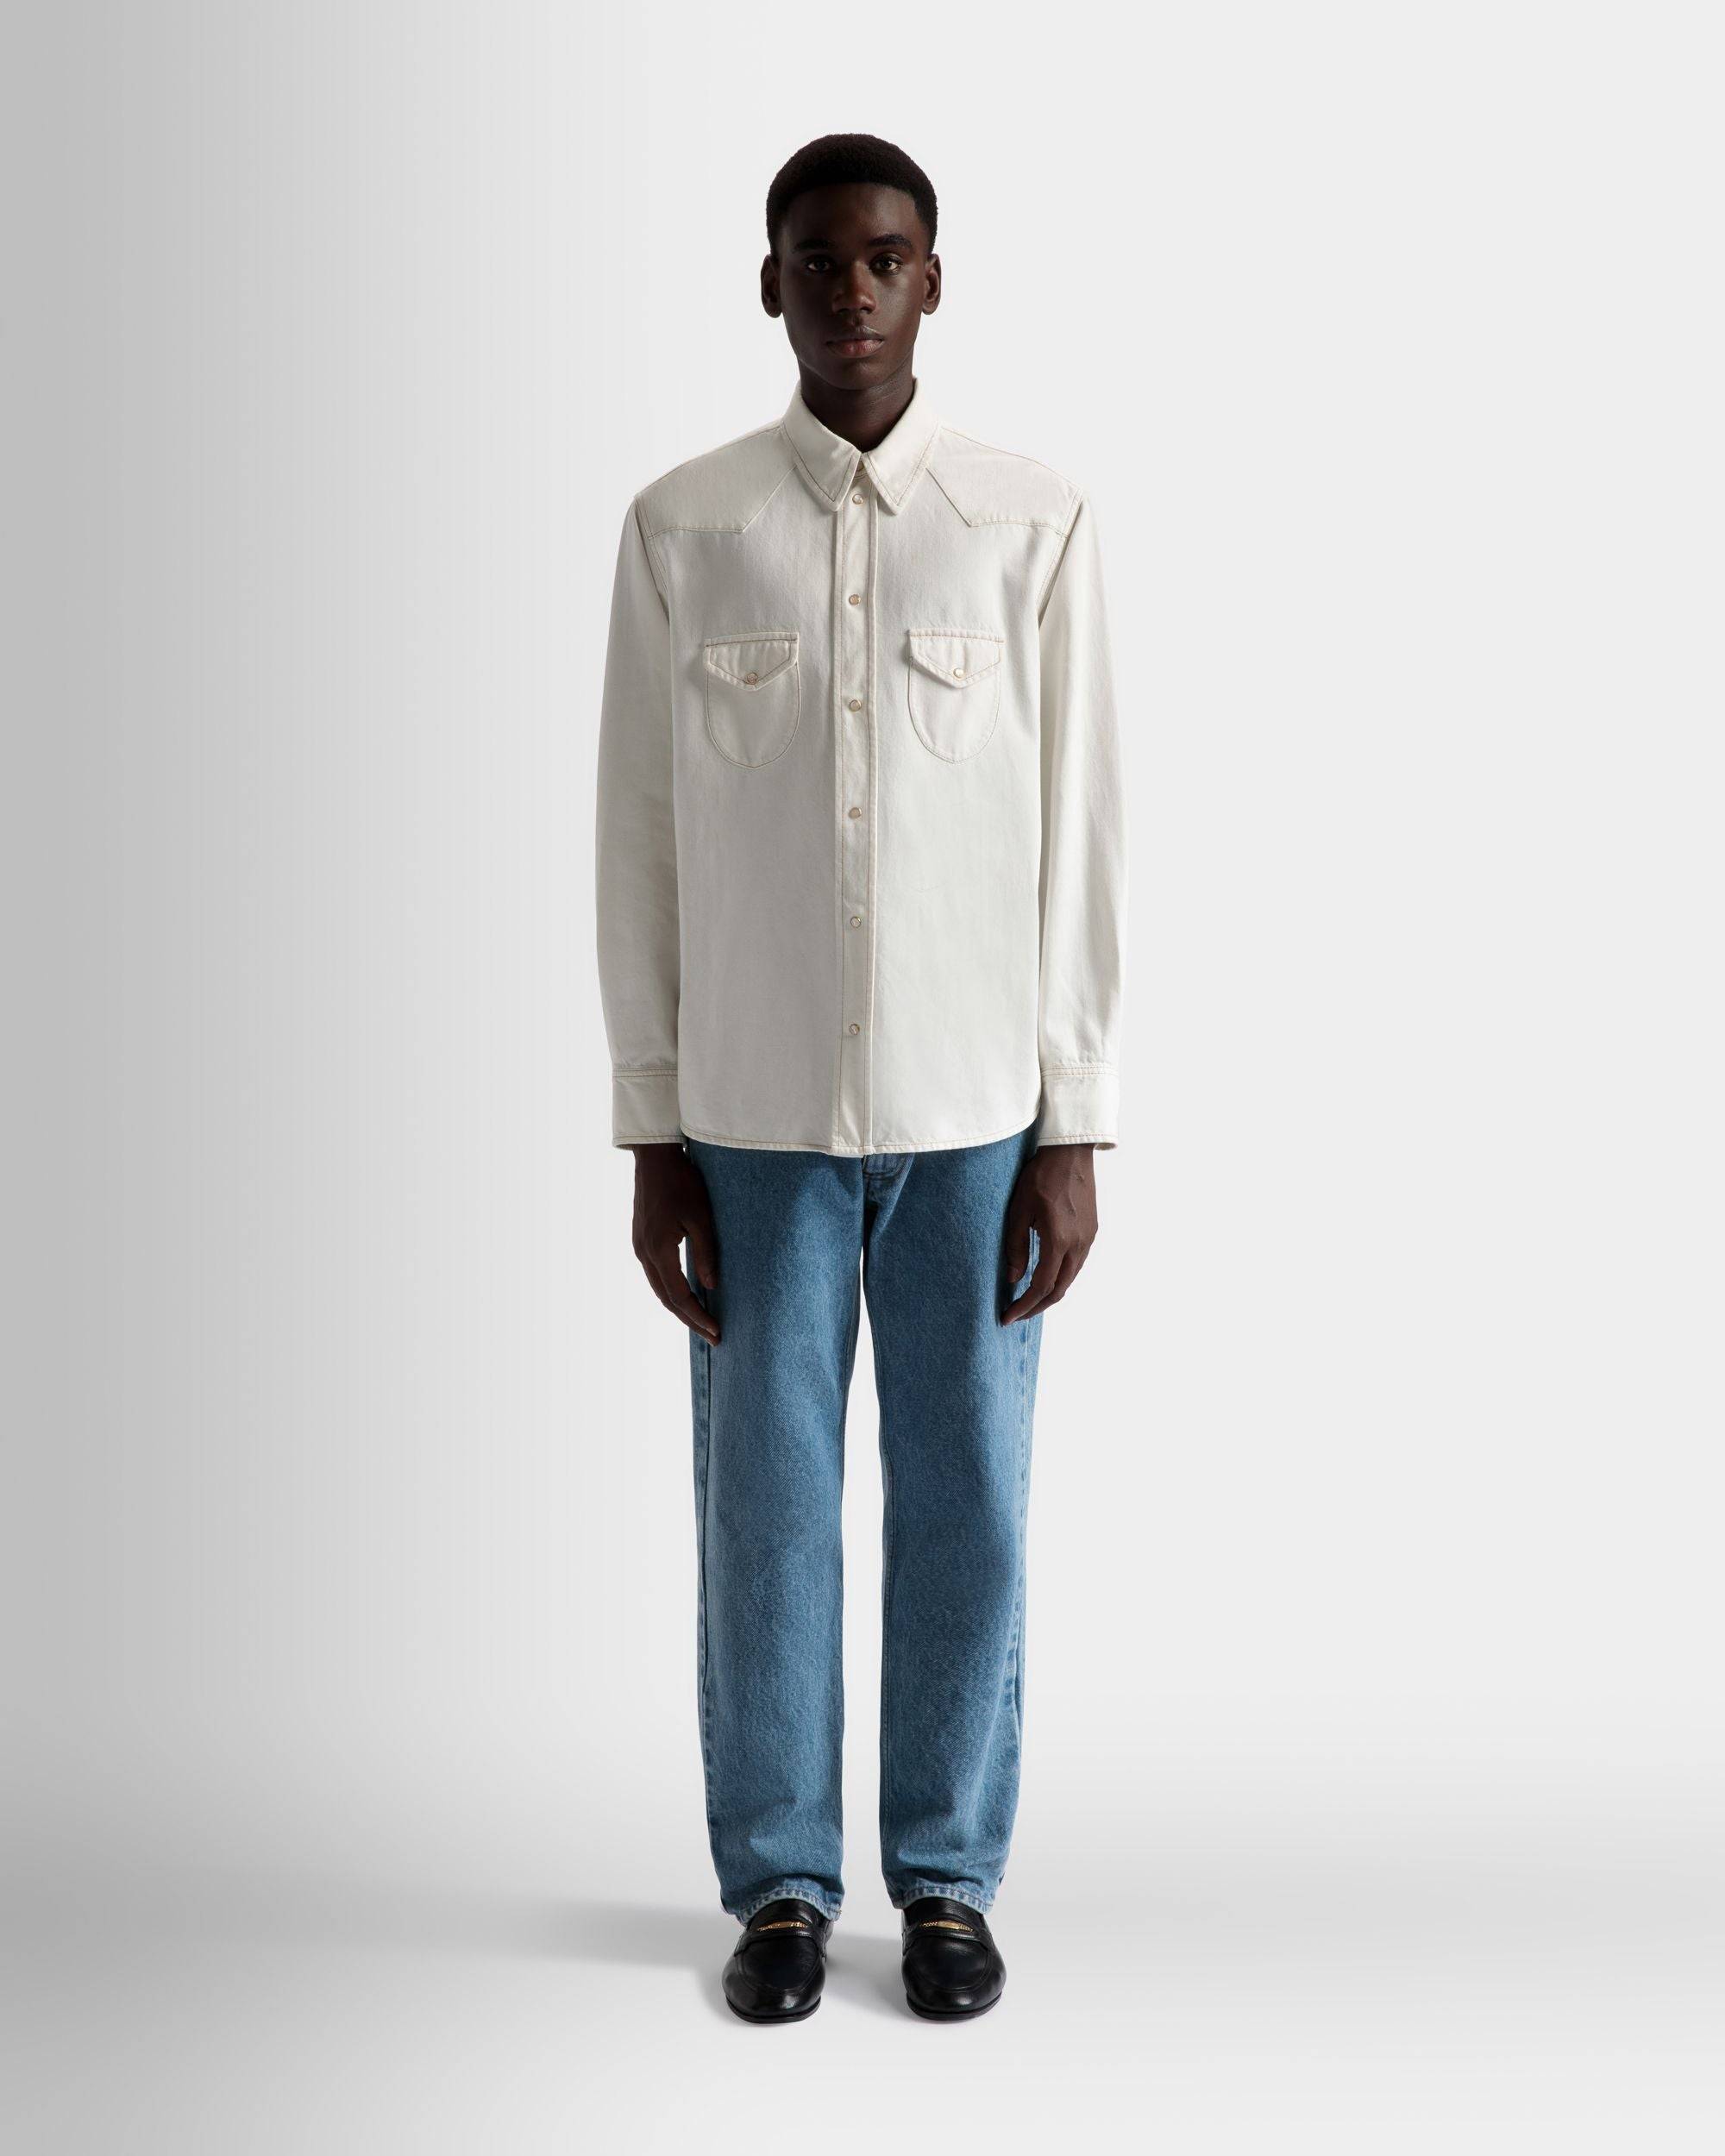 Hemd aus gebleichtem Denim | Herrenhemd | Baumwolle in Elfenbein | Bally | Model getragen Vorderseite